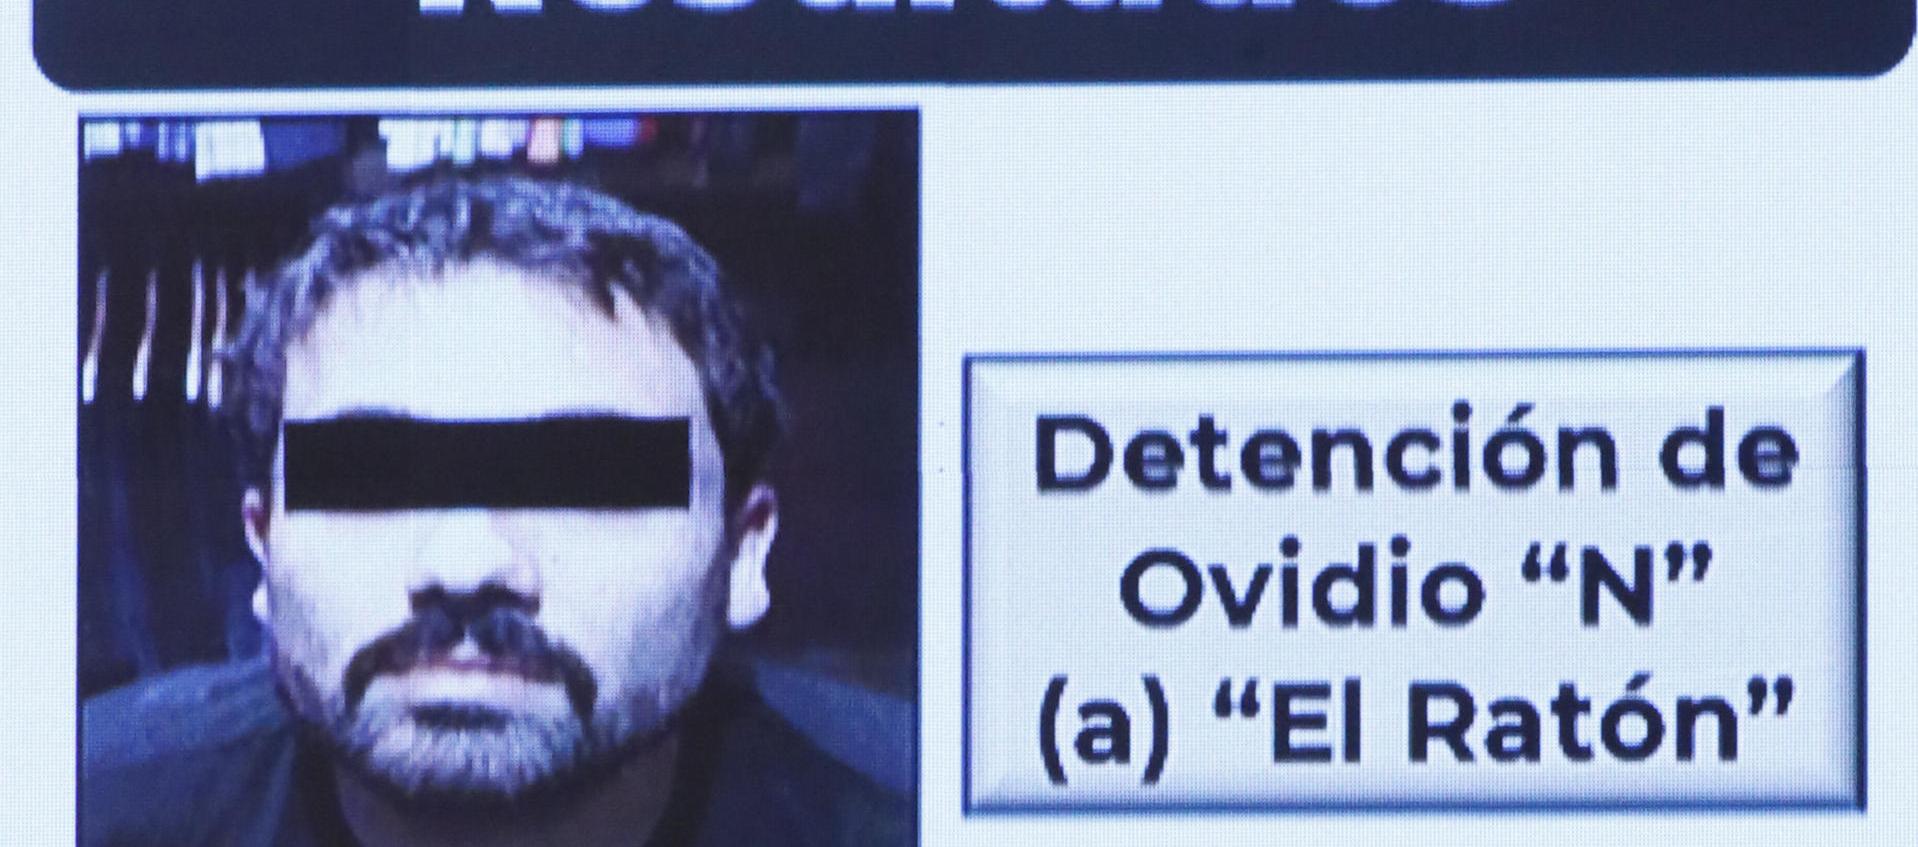 La ficha con la que se anunció la detención de Ovidio Guzmán, uno de los hijos del "Chapo" Guzmán